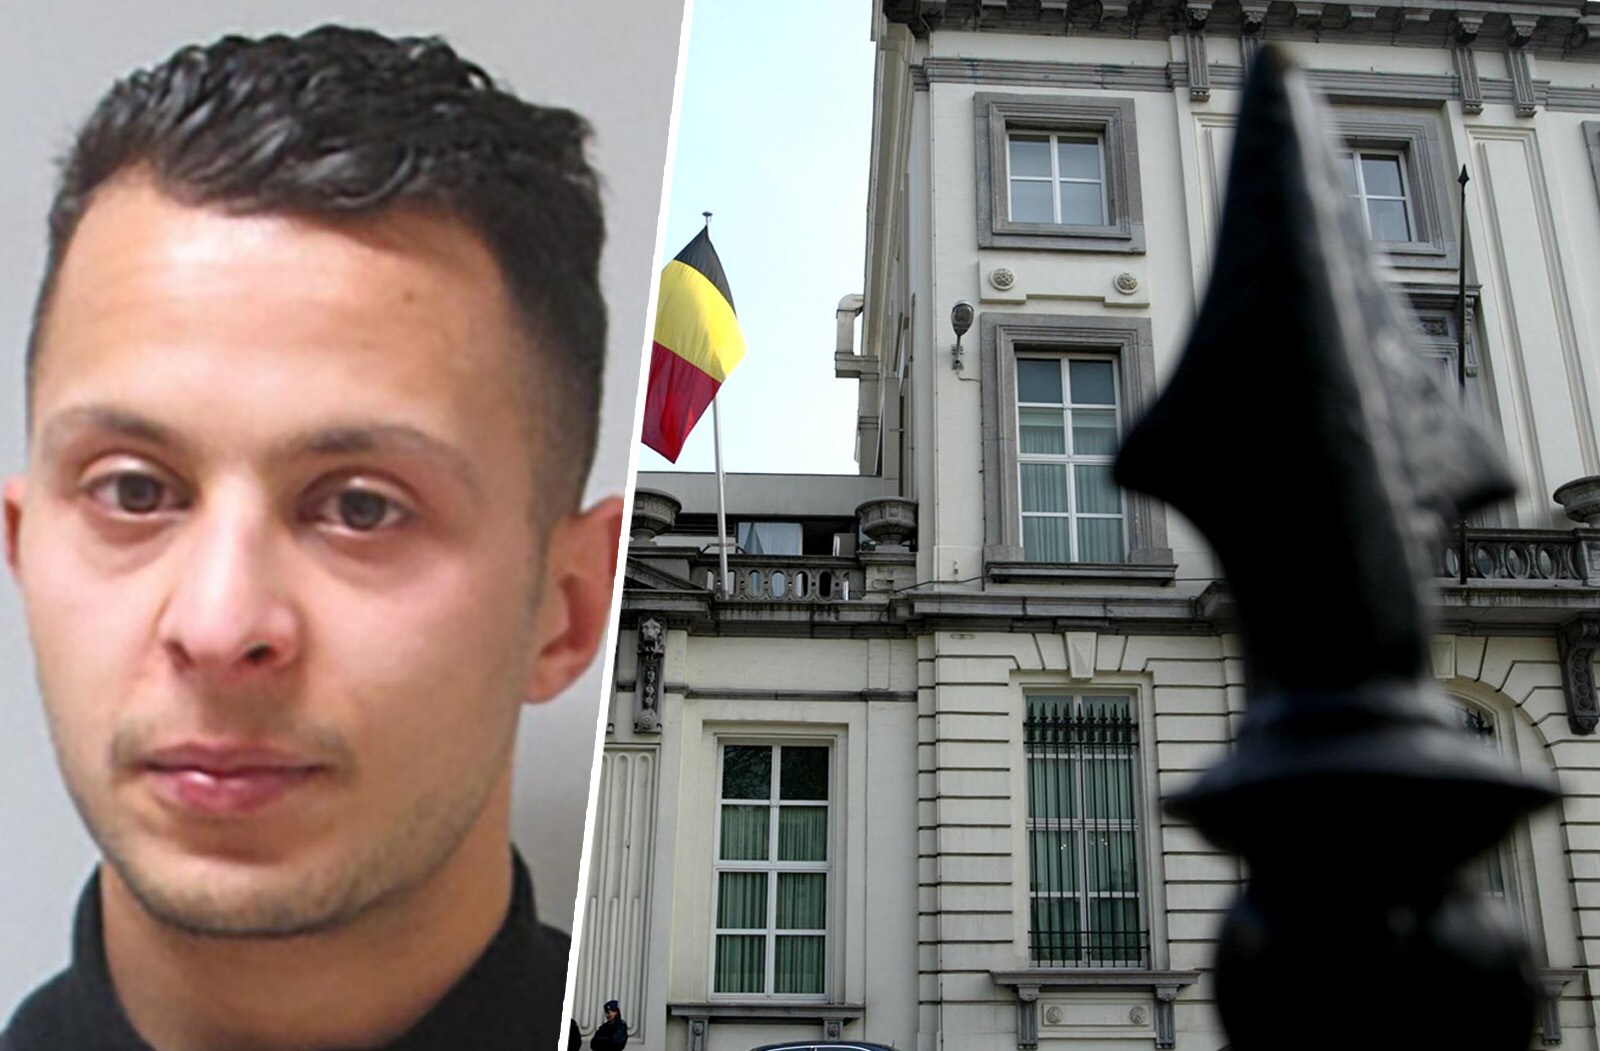 Salah Abdeslam zocht doelwit in België: foto's van Wetstraat 16 en kerncentrale Doel op computer gevonden